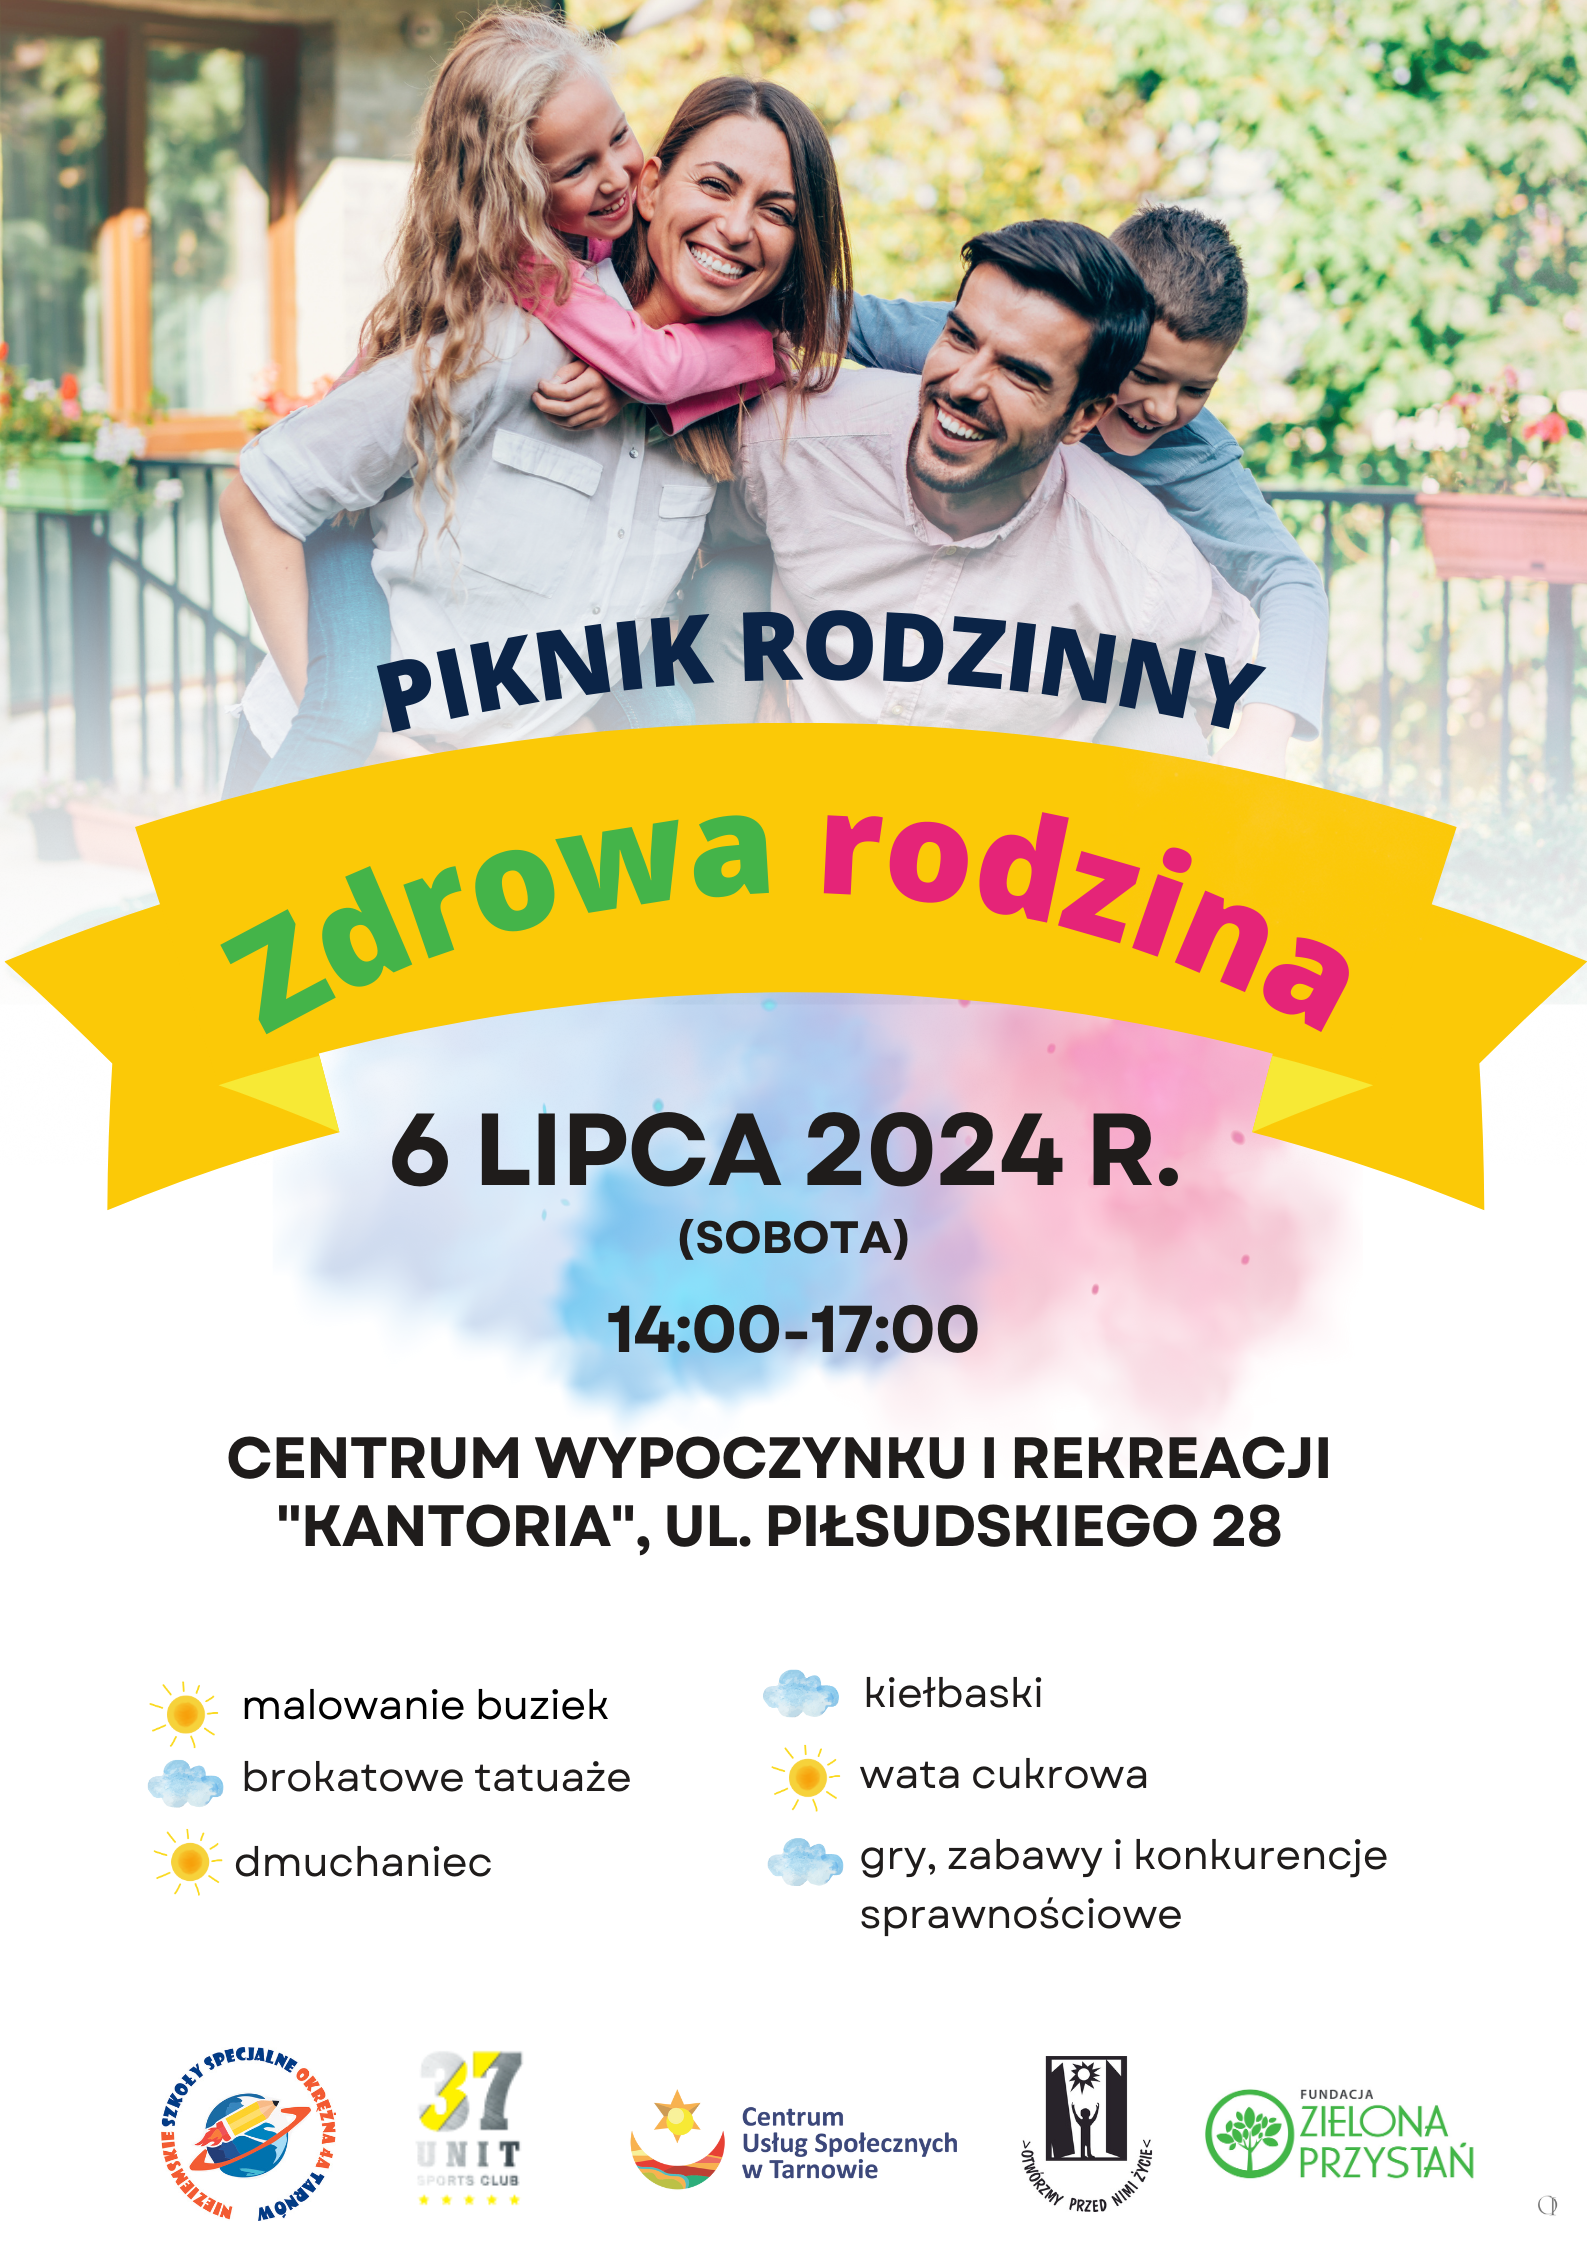 Piknik Zdrowa Rodzina - 06.07.2024 r.